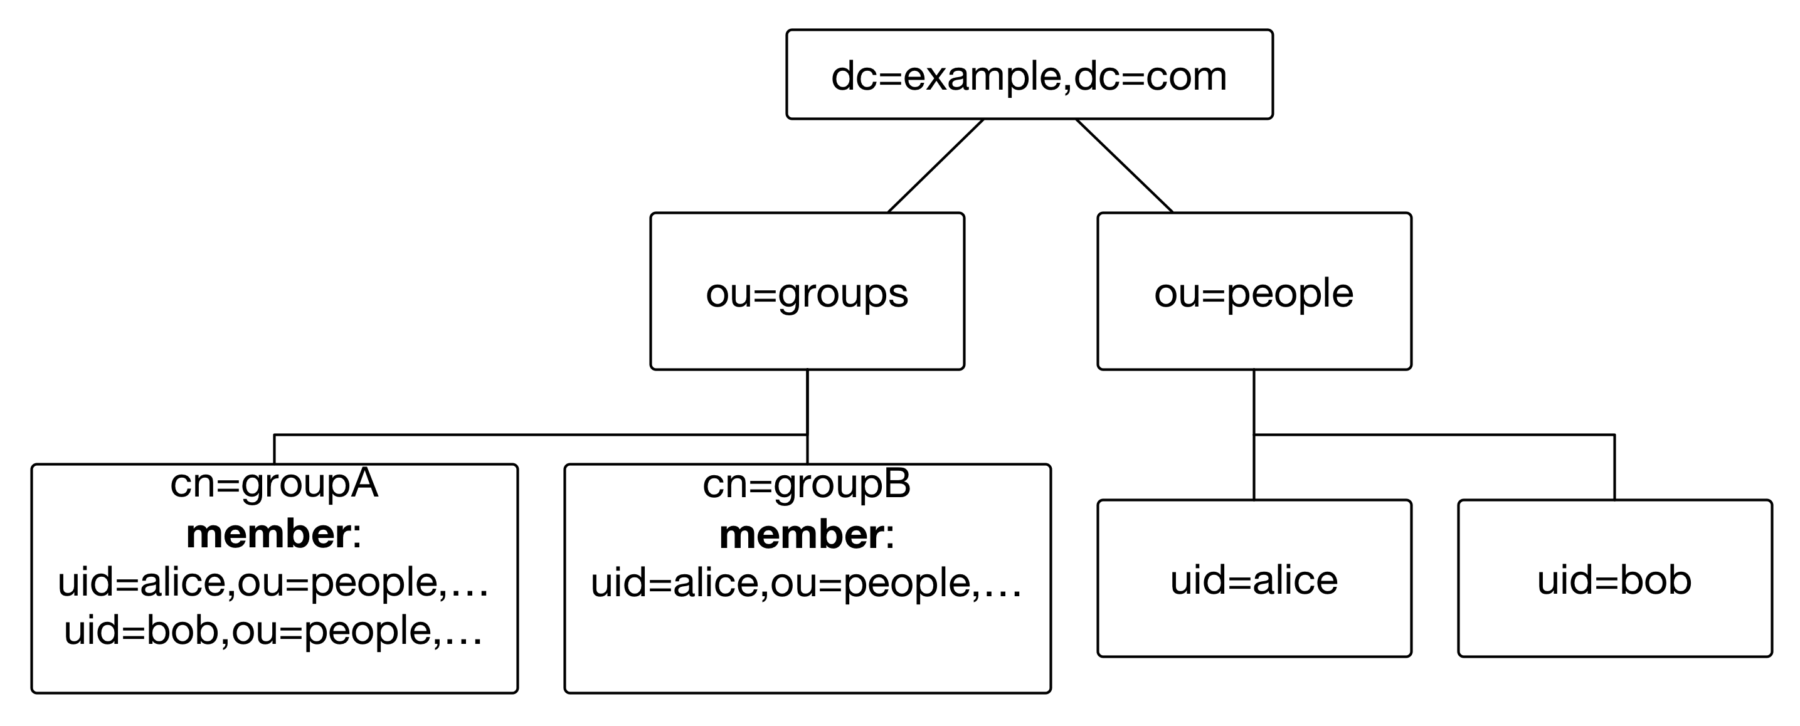 ldap-groups